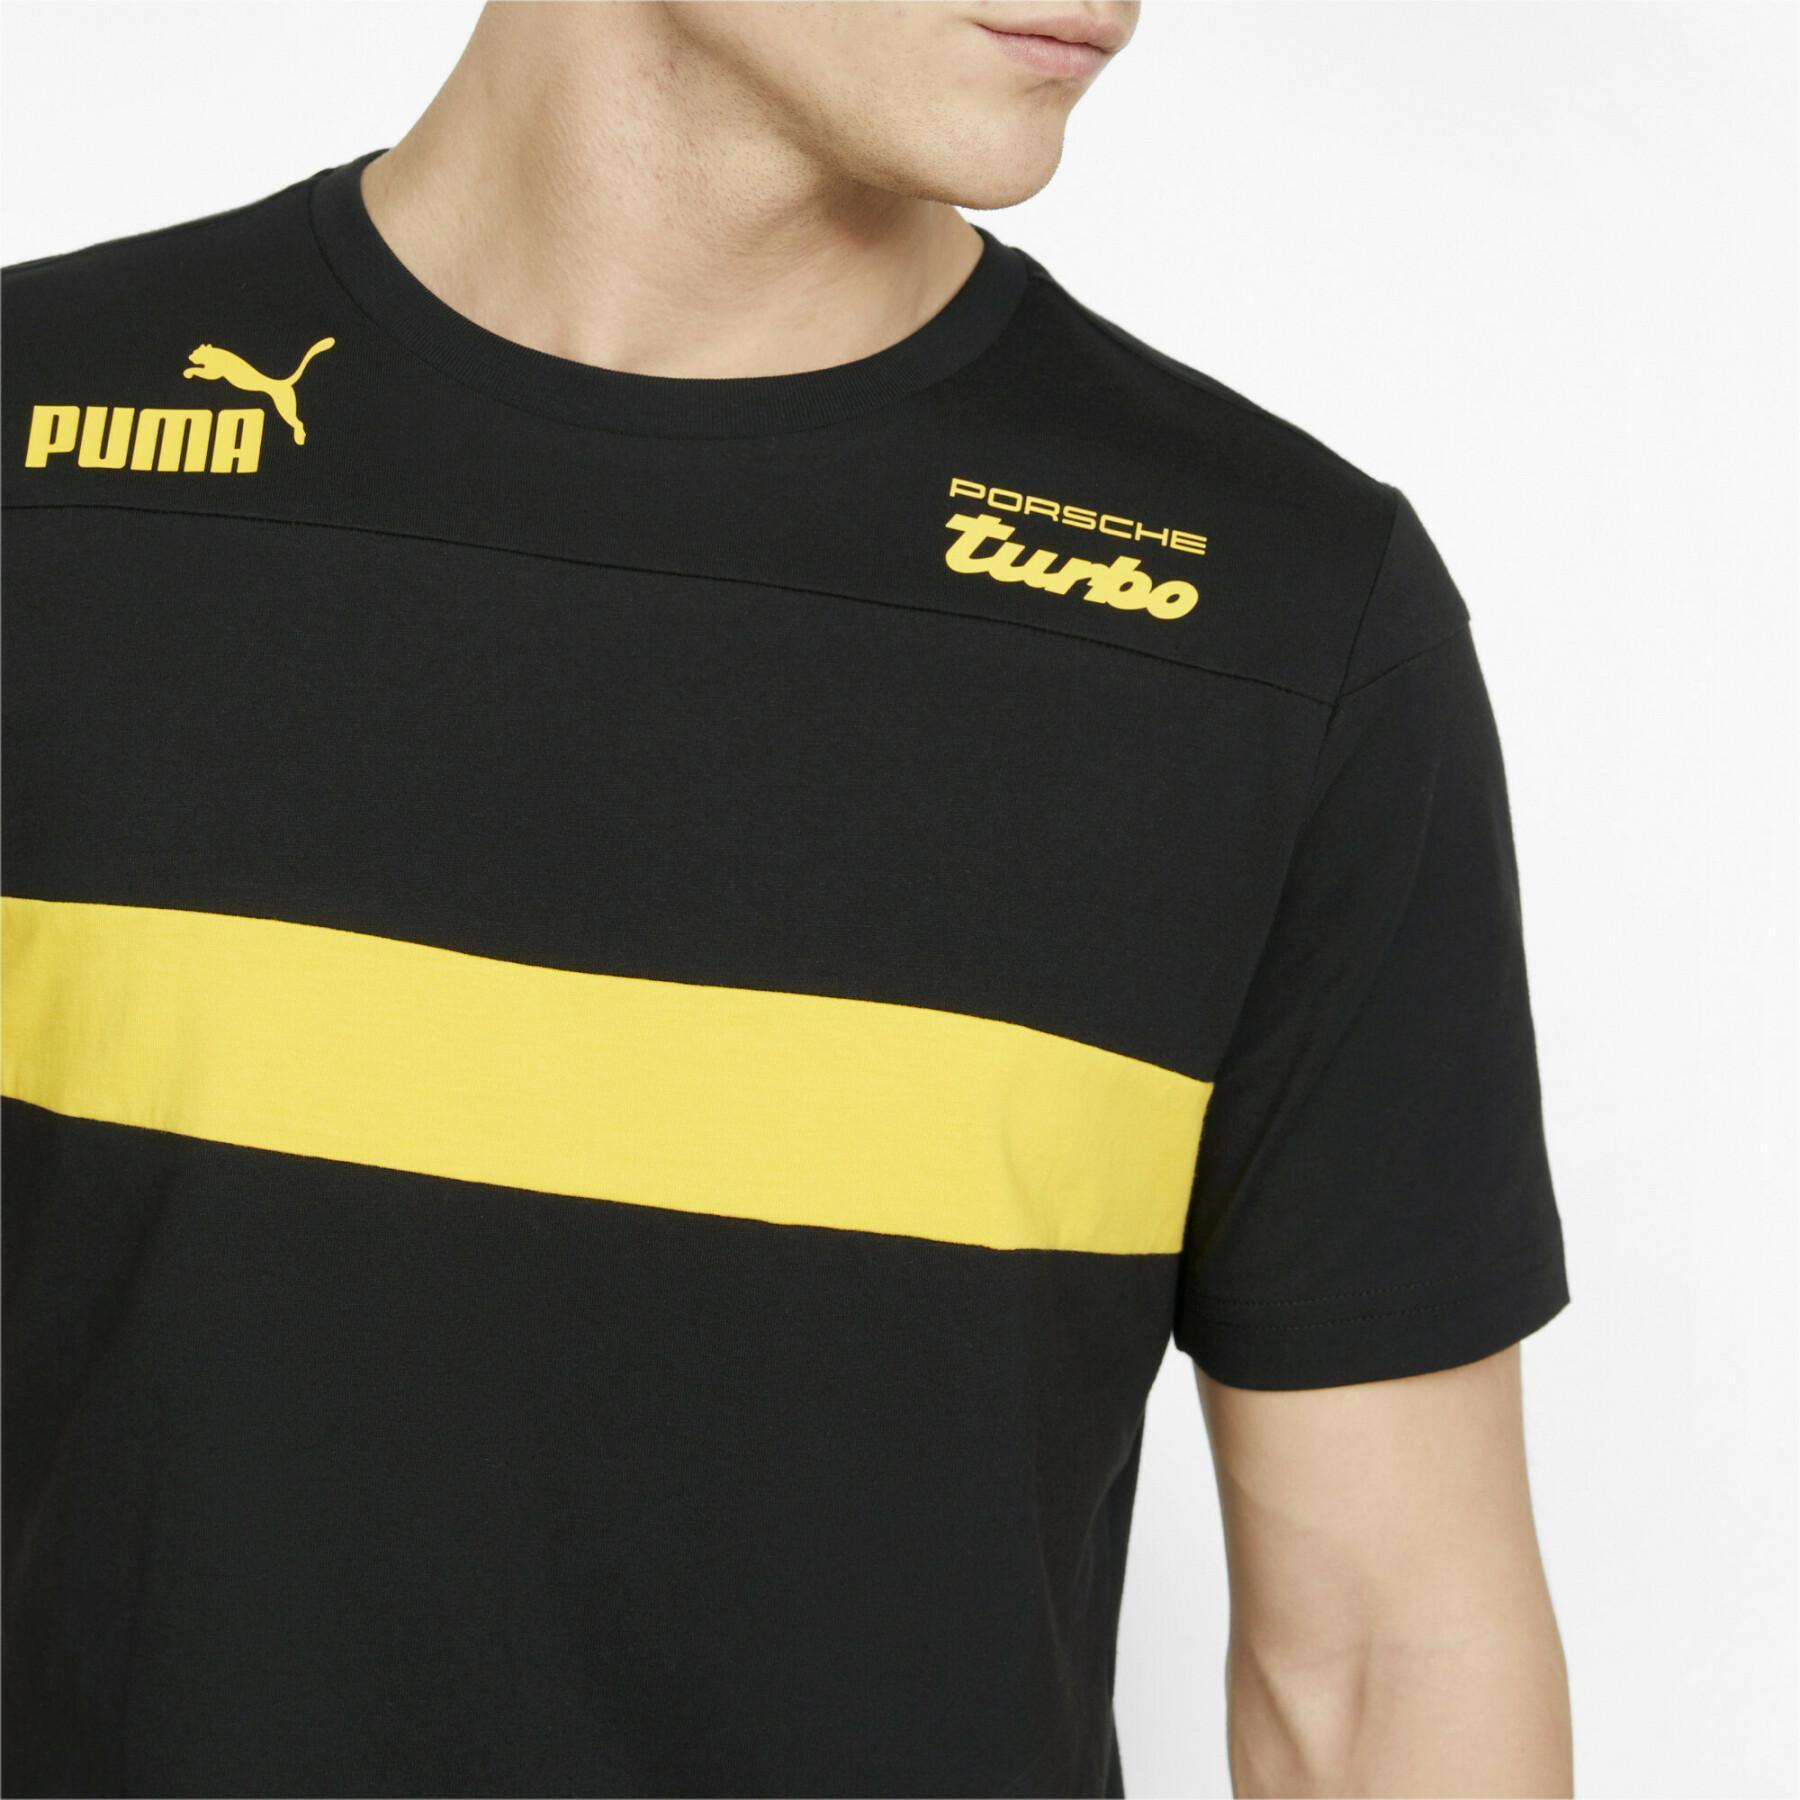 Camiseta Puma Pl Sds